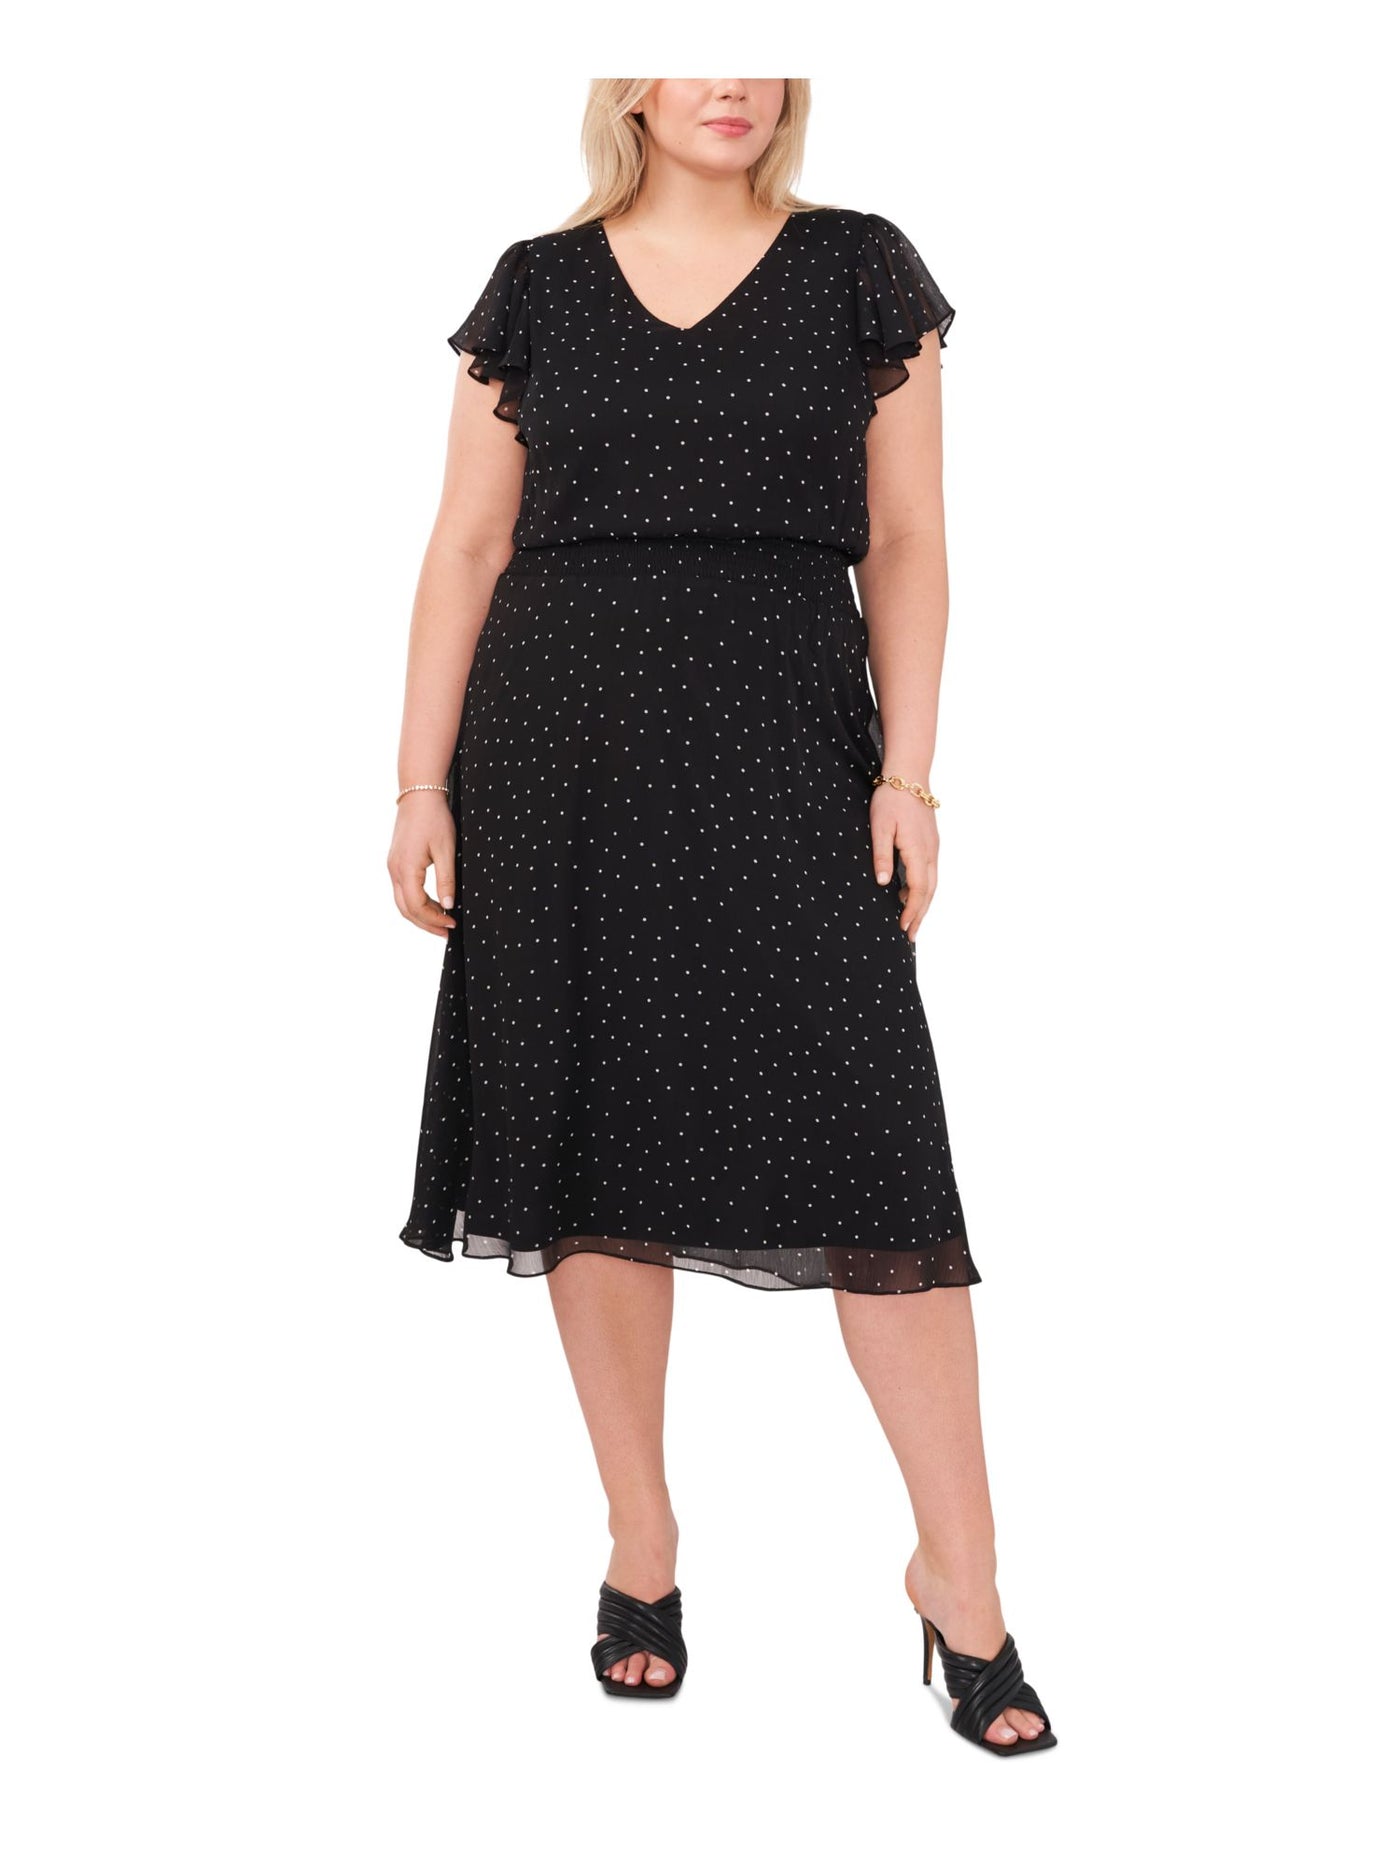 MSK WOMEN Womens Black Smocked Lined Pullover Polka Dot Flutter Sleeve V Neck Knee Length Fit + Flare Dress Plus 3X